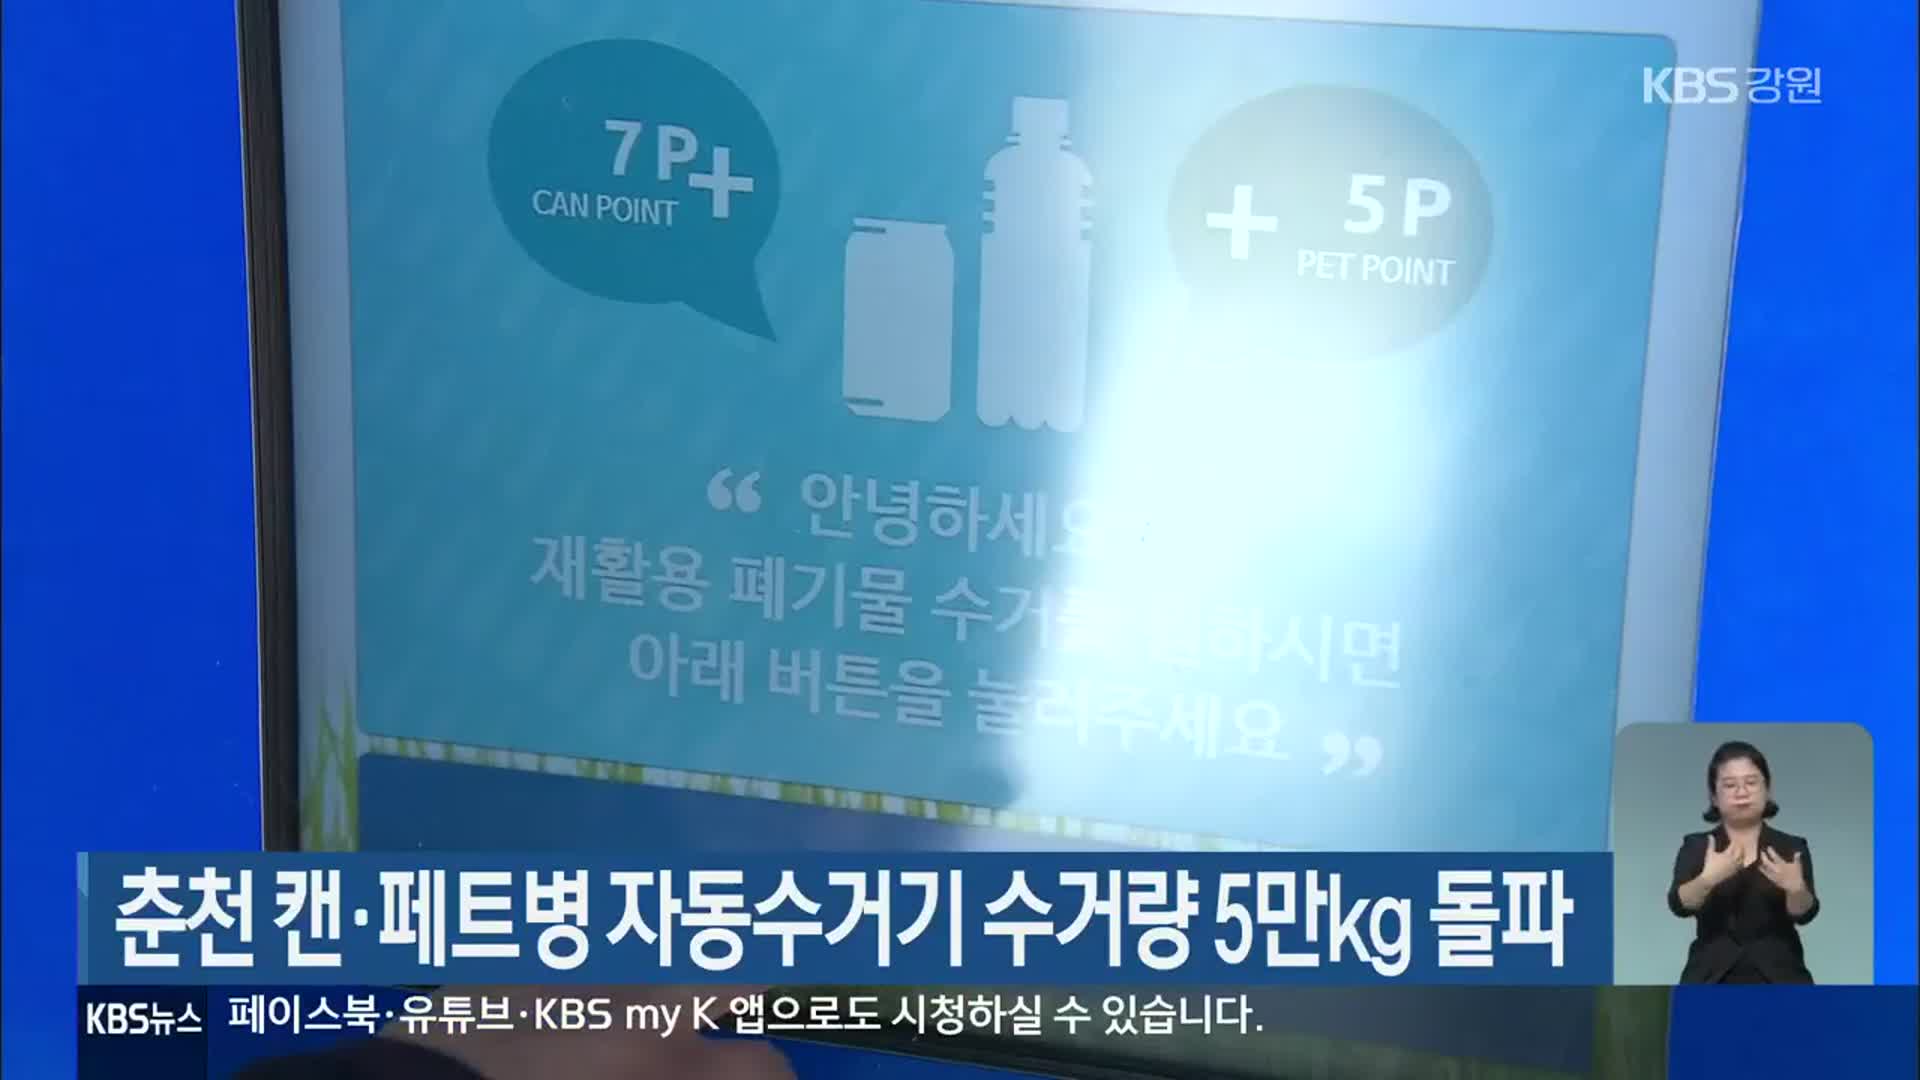 춘천 캔·페트병 자동수거기 수거량 5만Kg 돌파